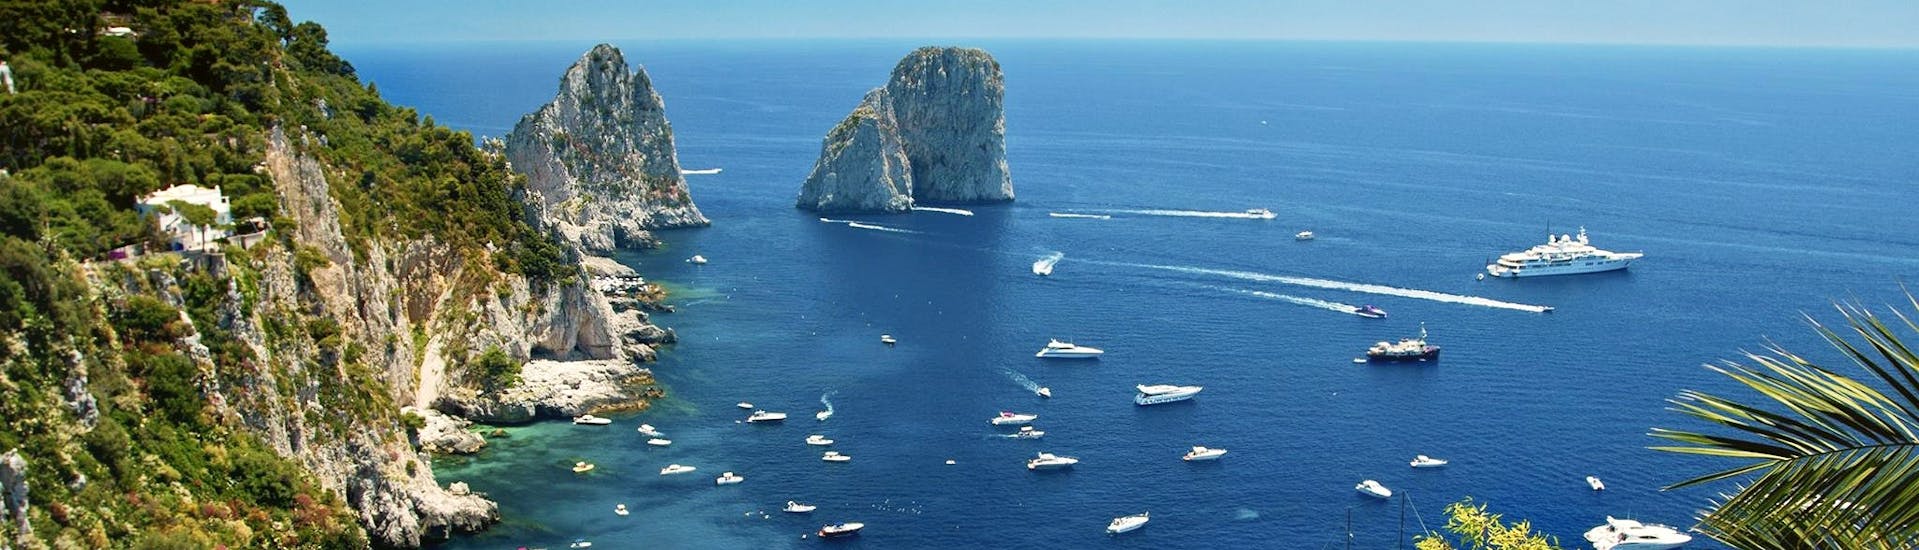 Blick von oben auf die Faraglioni von Capri, die Ihr während der Bootstour von Sorrent nach Capri mit Limoncello-Verkostung sehen könnt.